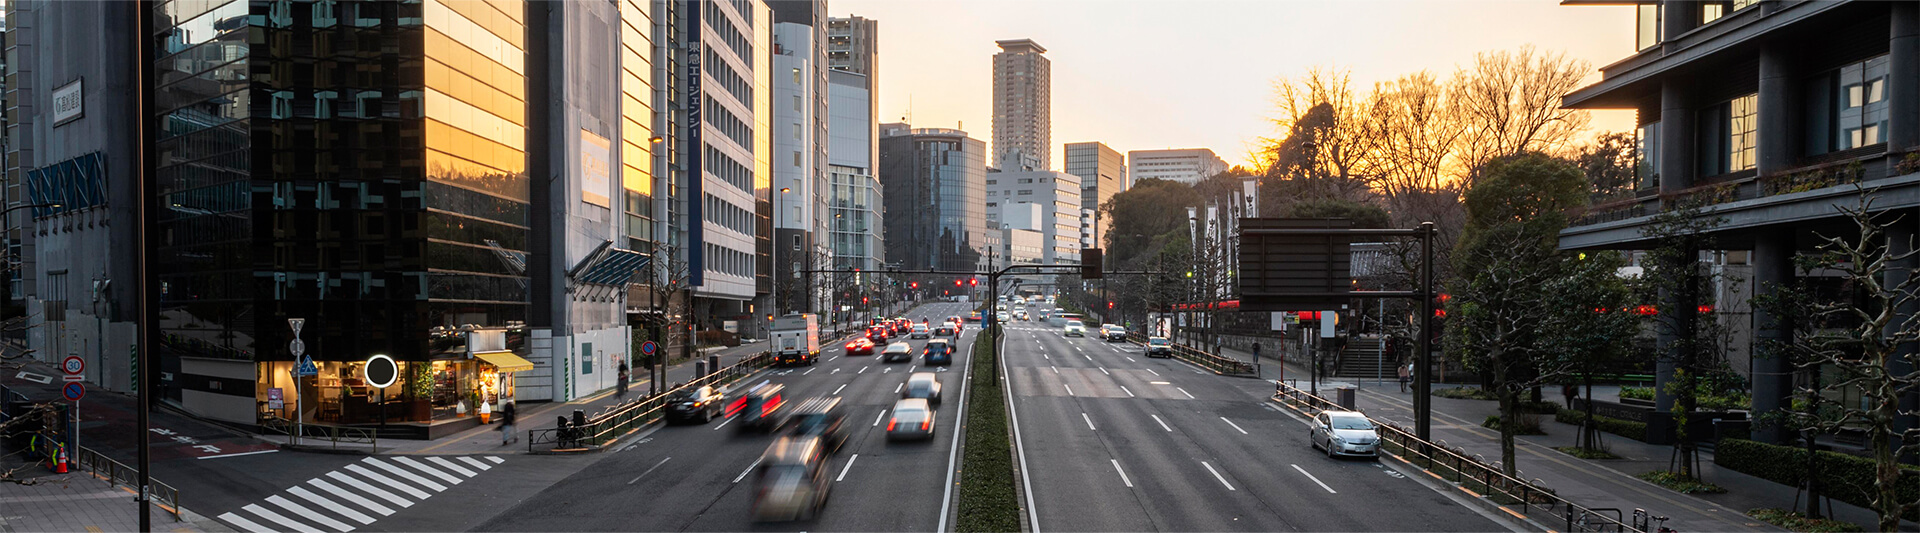 Giới thiệu chung về Tokyo – Thủ đô lớn nhất thế giới